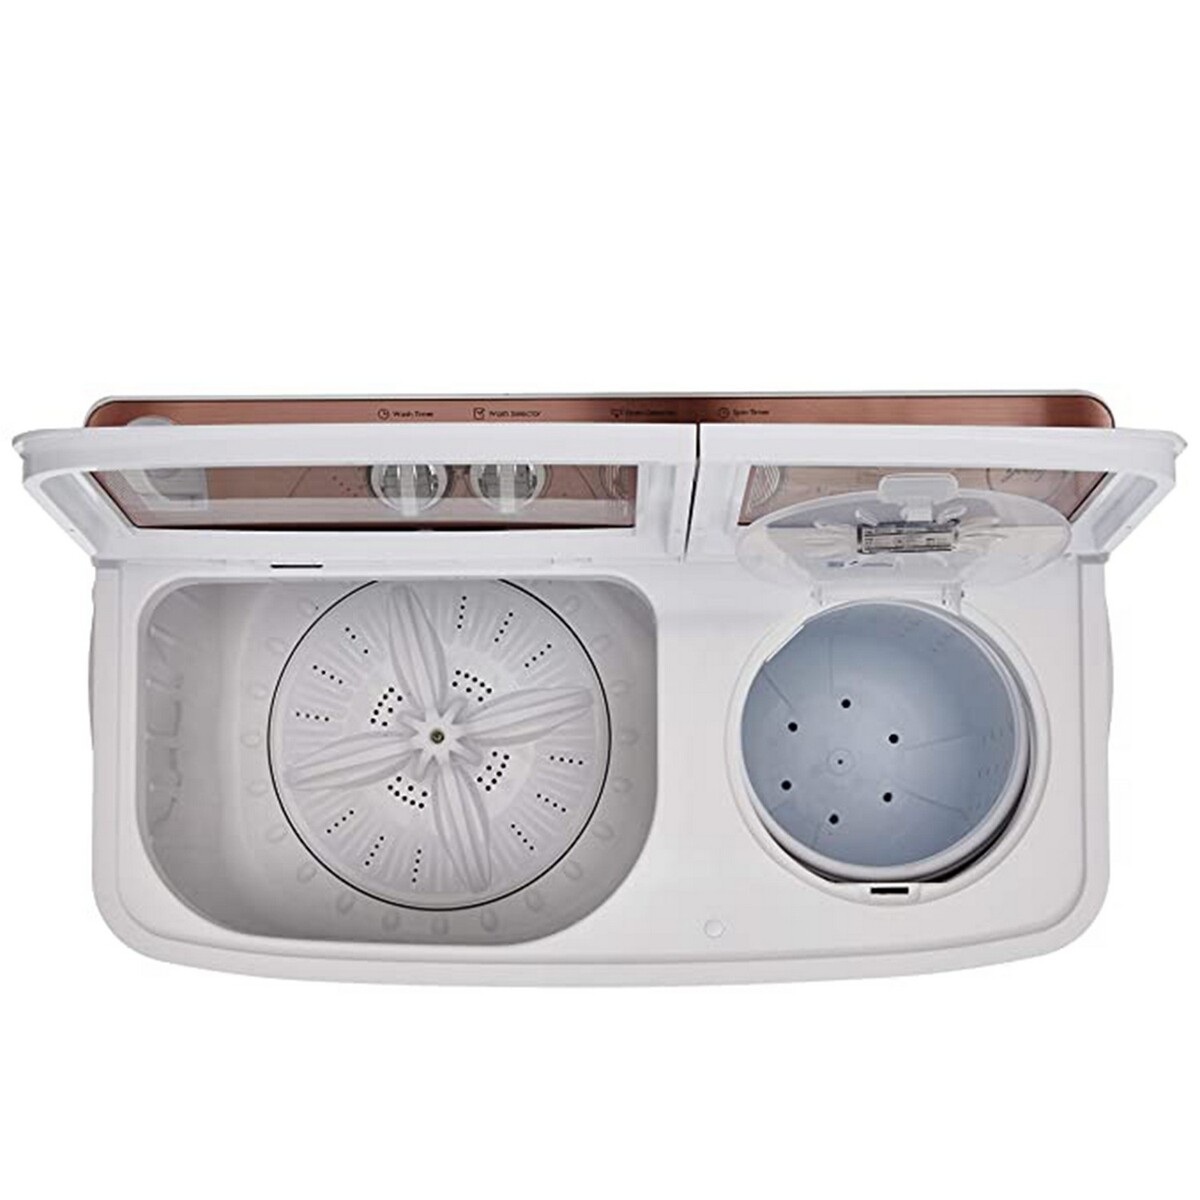 Godrej Semi Automatic  Washing Machine NX 1020 CPBR 10.2 kg